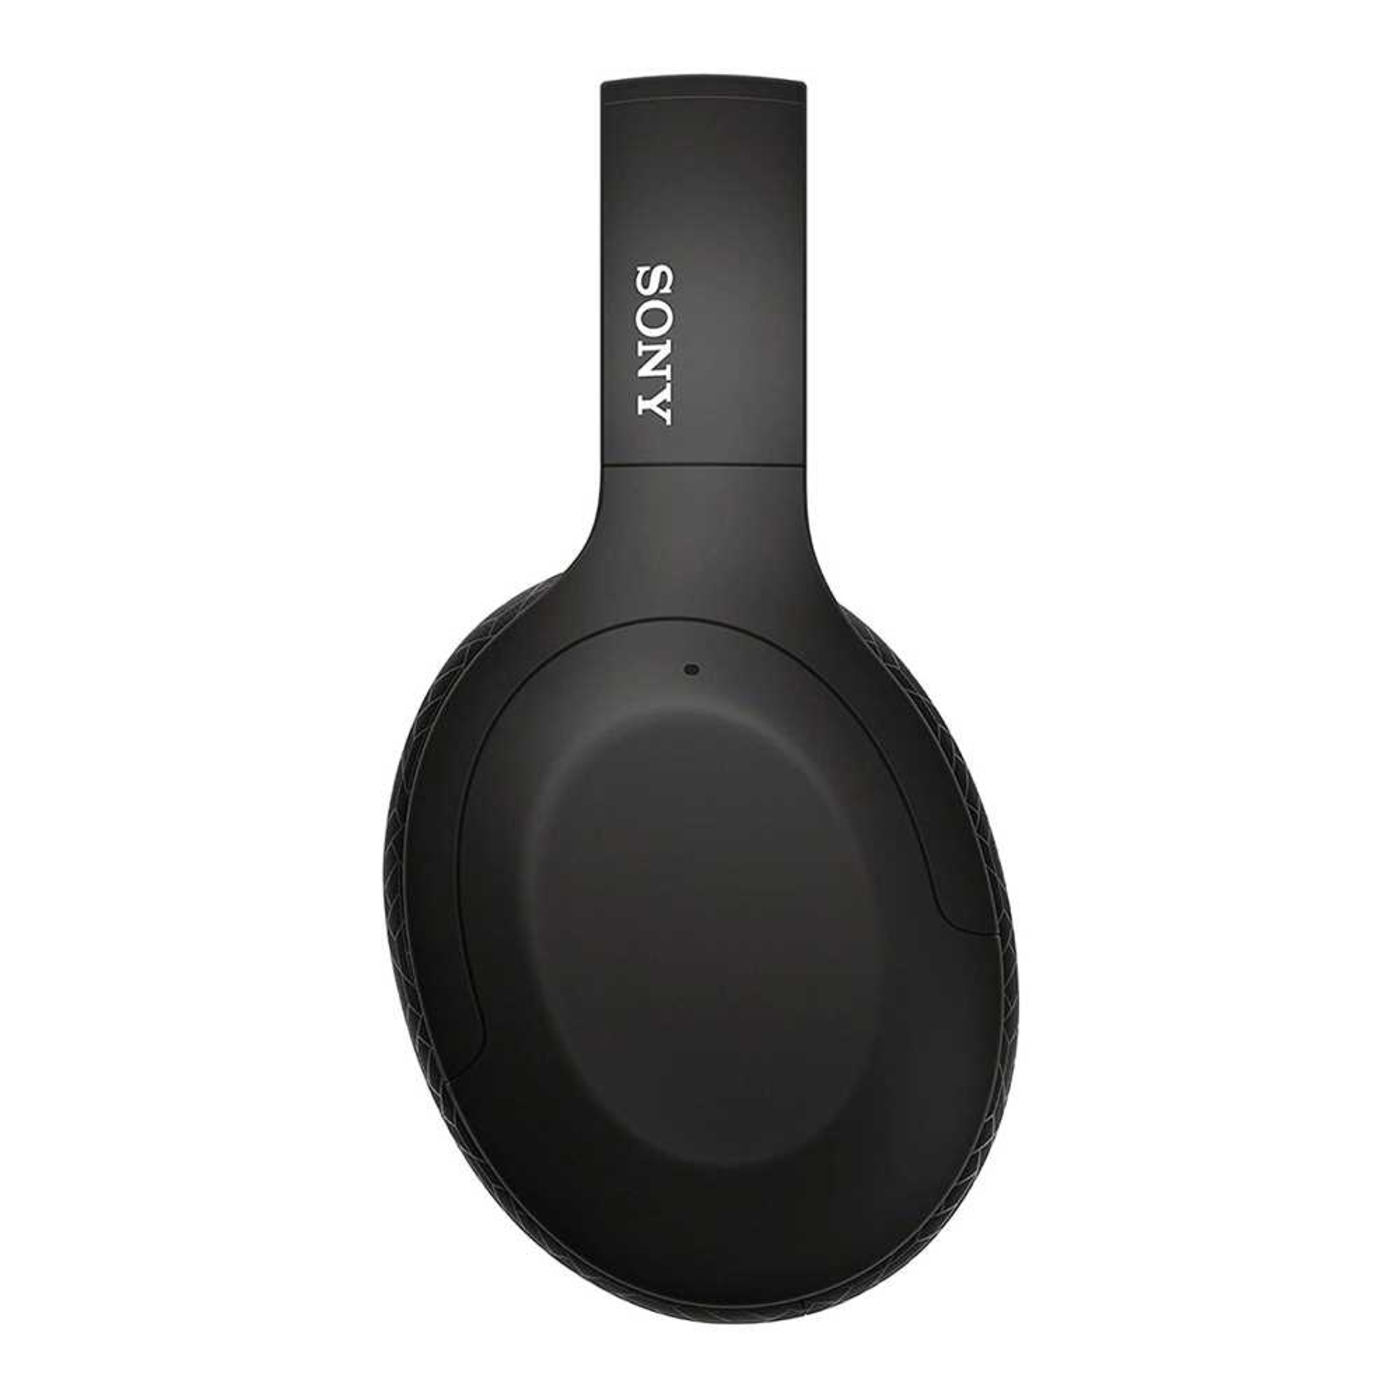 Audífonos de Diadema SONY Inalámbricos Bluetooth Over Ear WH-H910N Cancelación de Ruido Negro